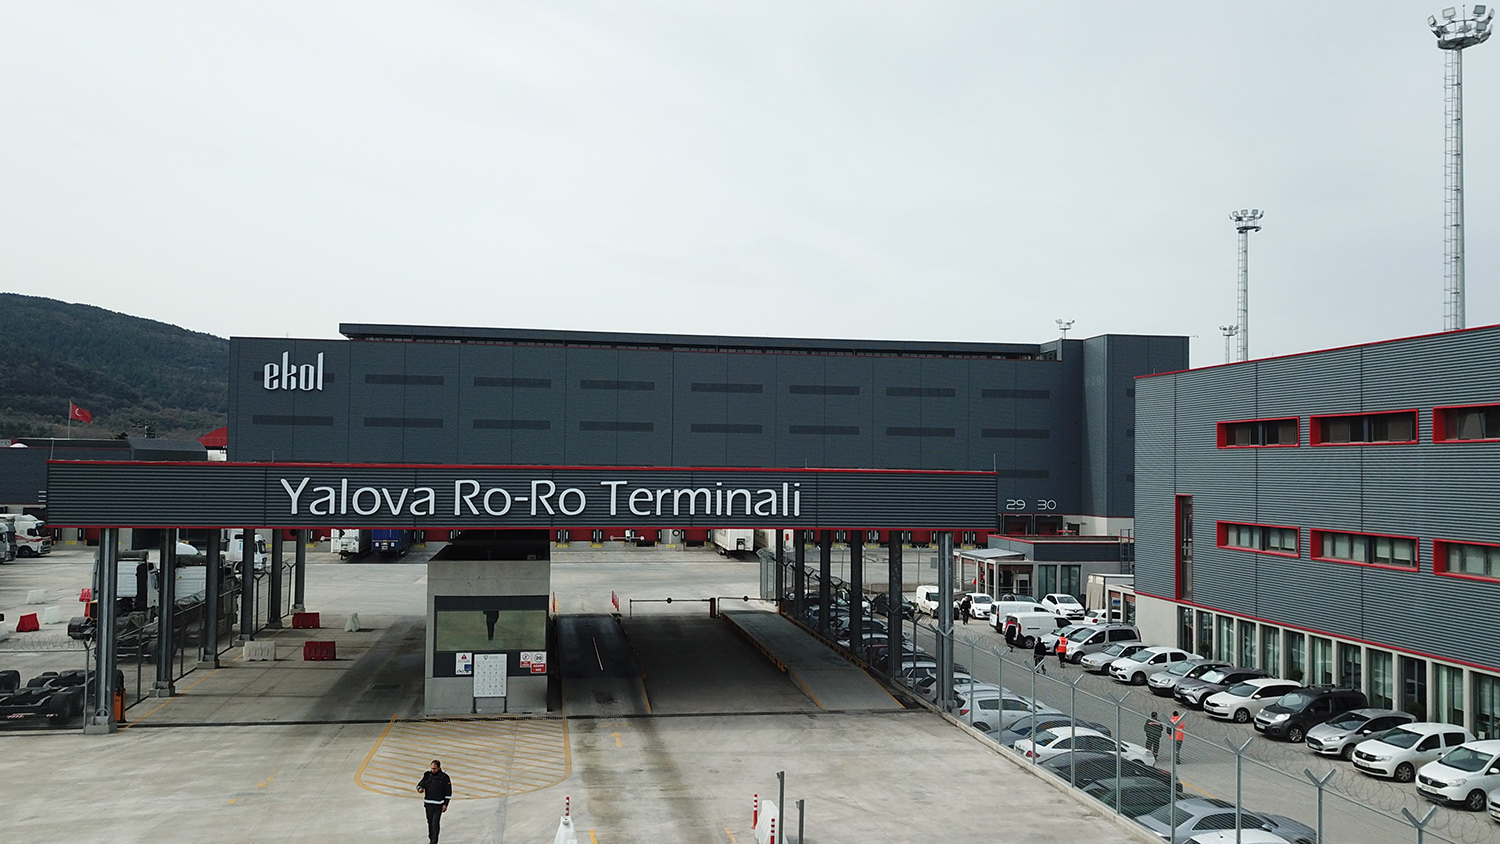 Yalova Ro-Ro Terminali